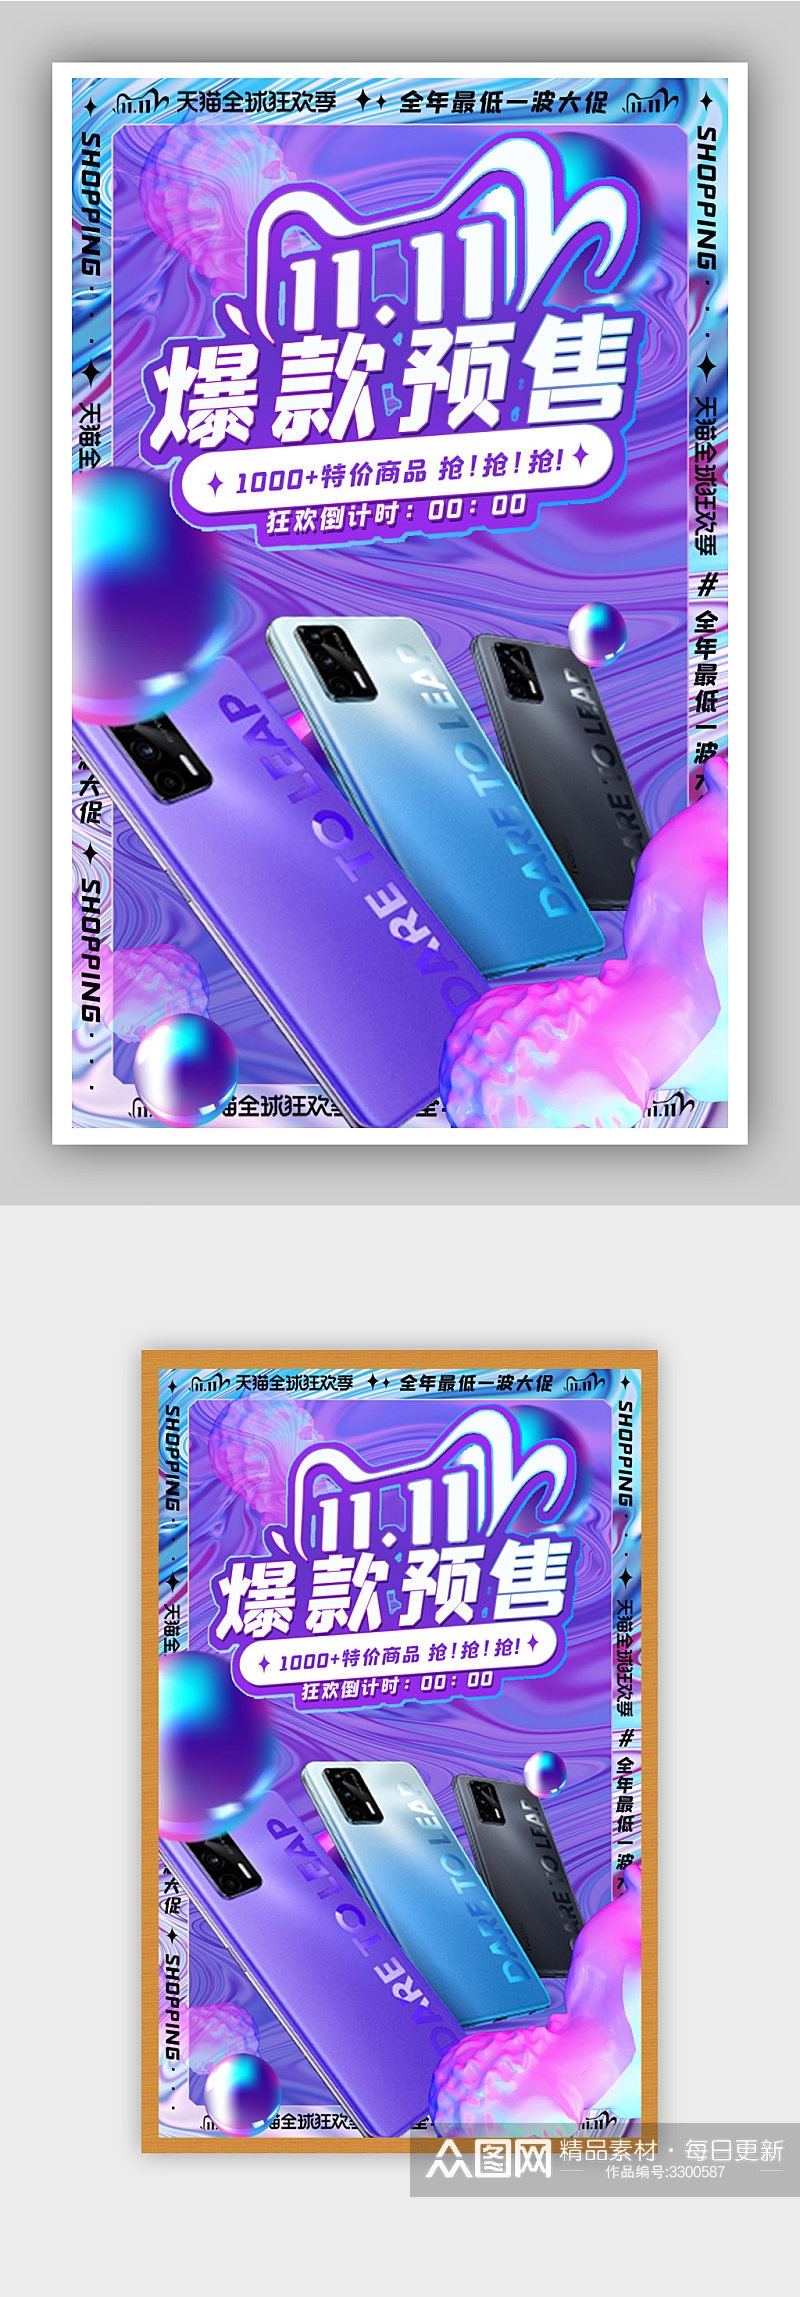 紫色双十一手机预售海报素材